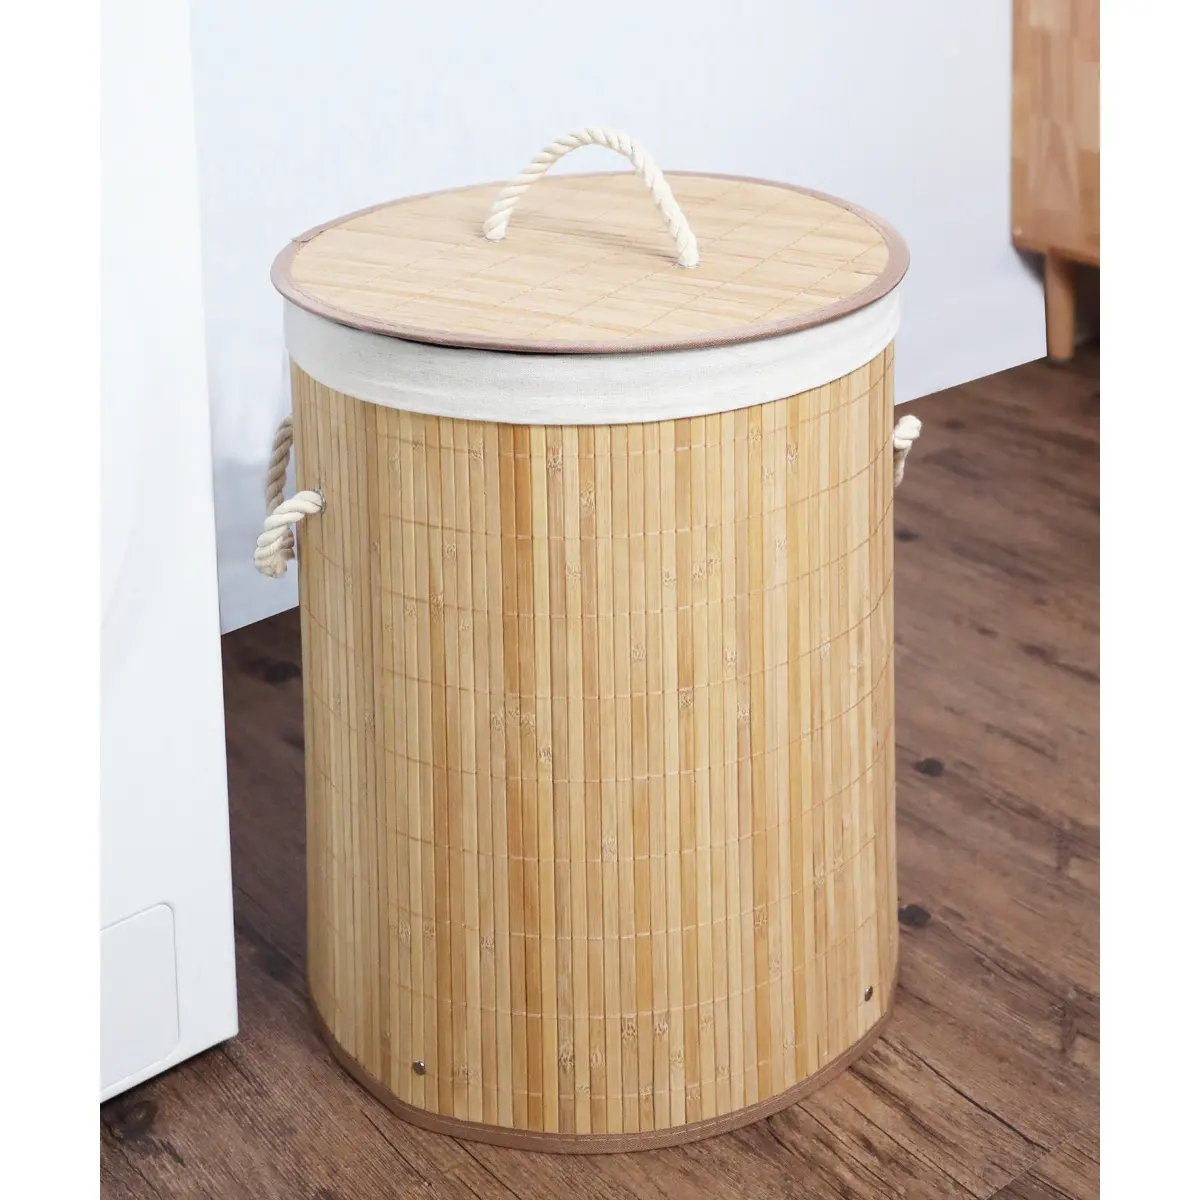 Wholesales cesta de bambu natural feita de bambu, cesta para chá e café, cesta com tampa e alça